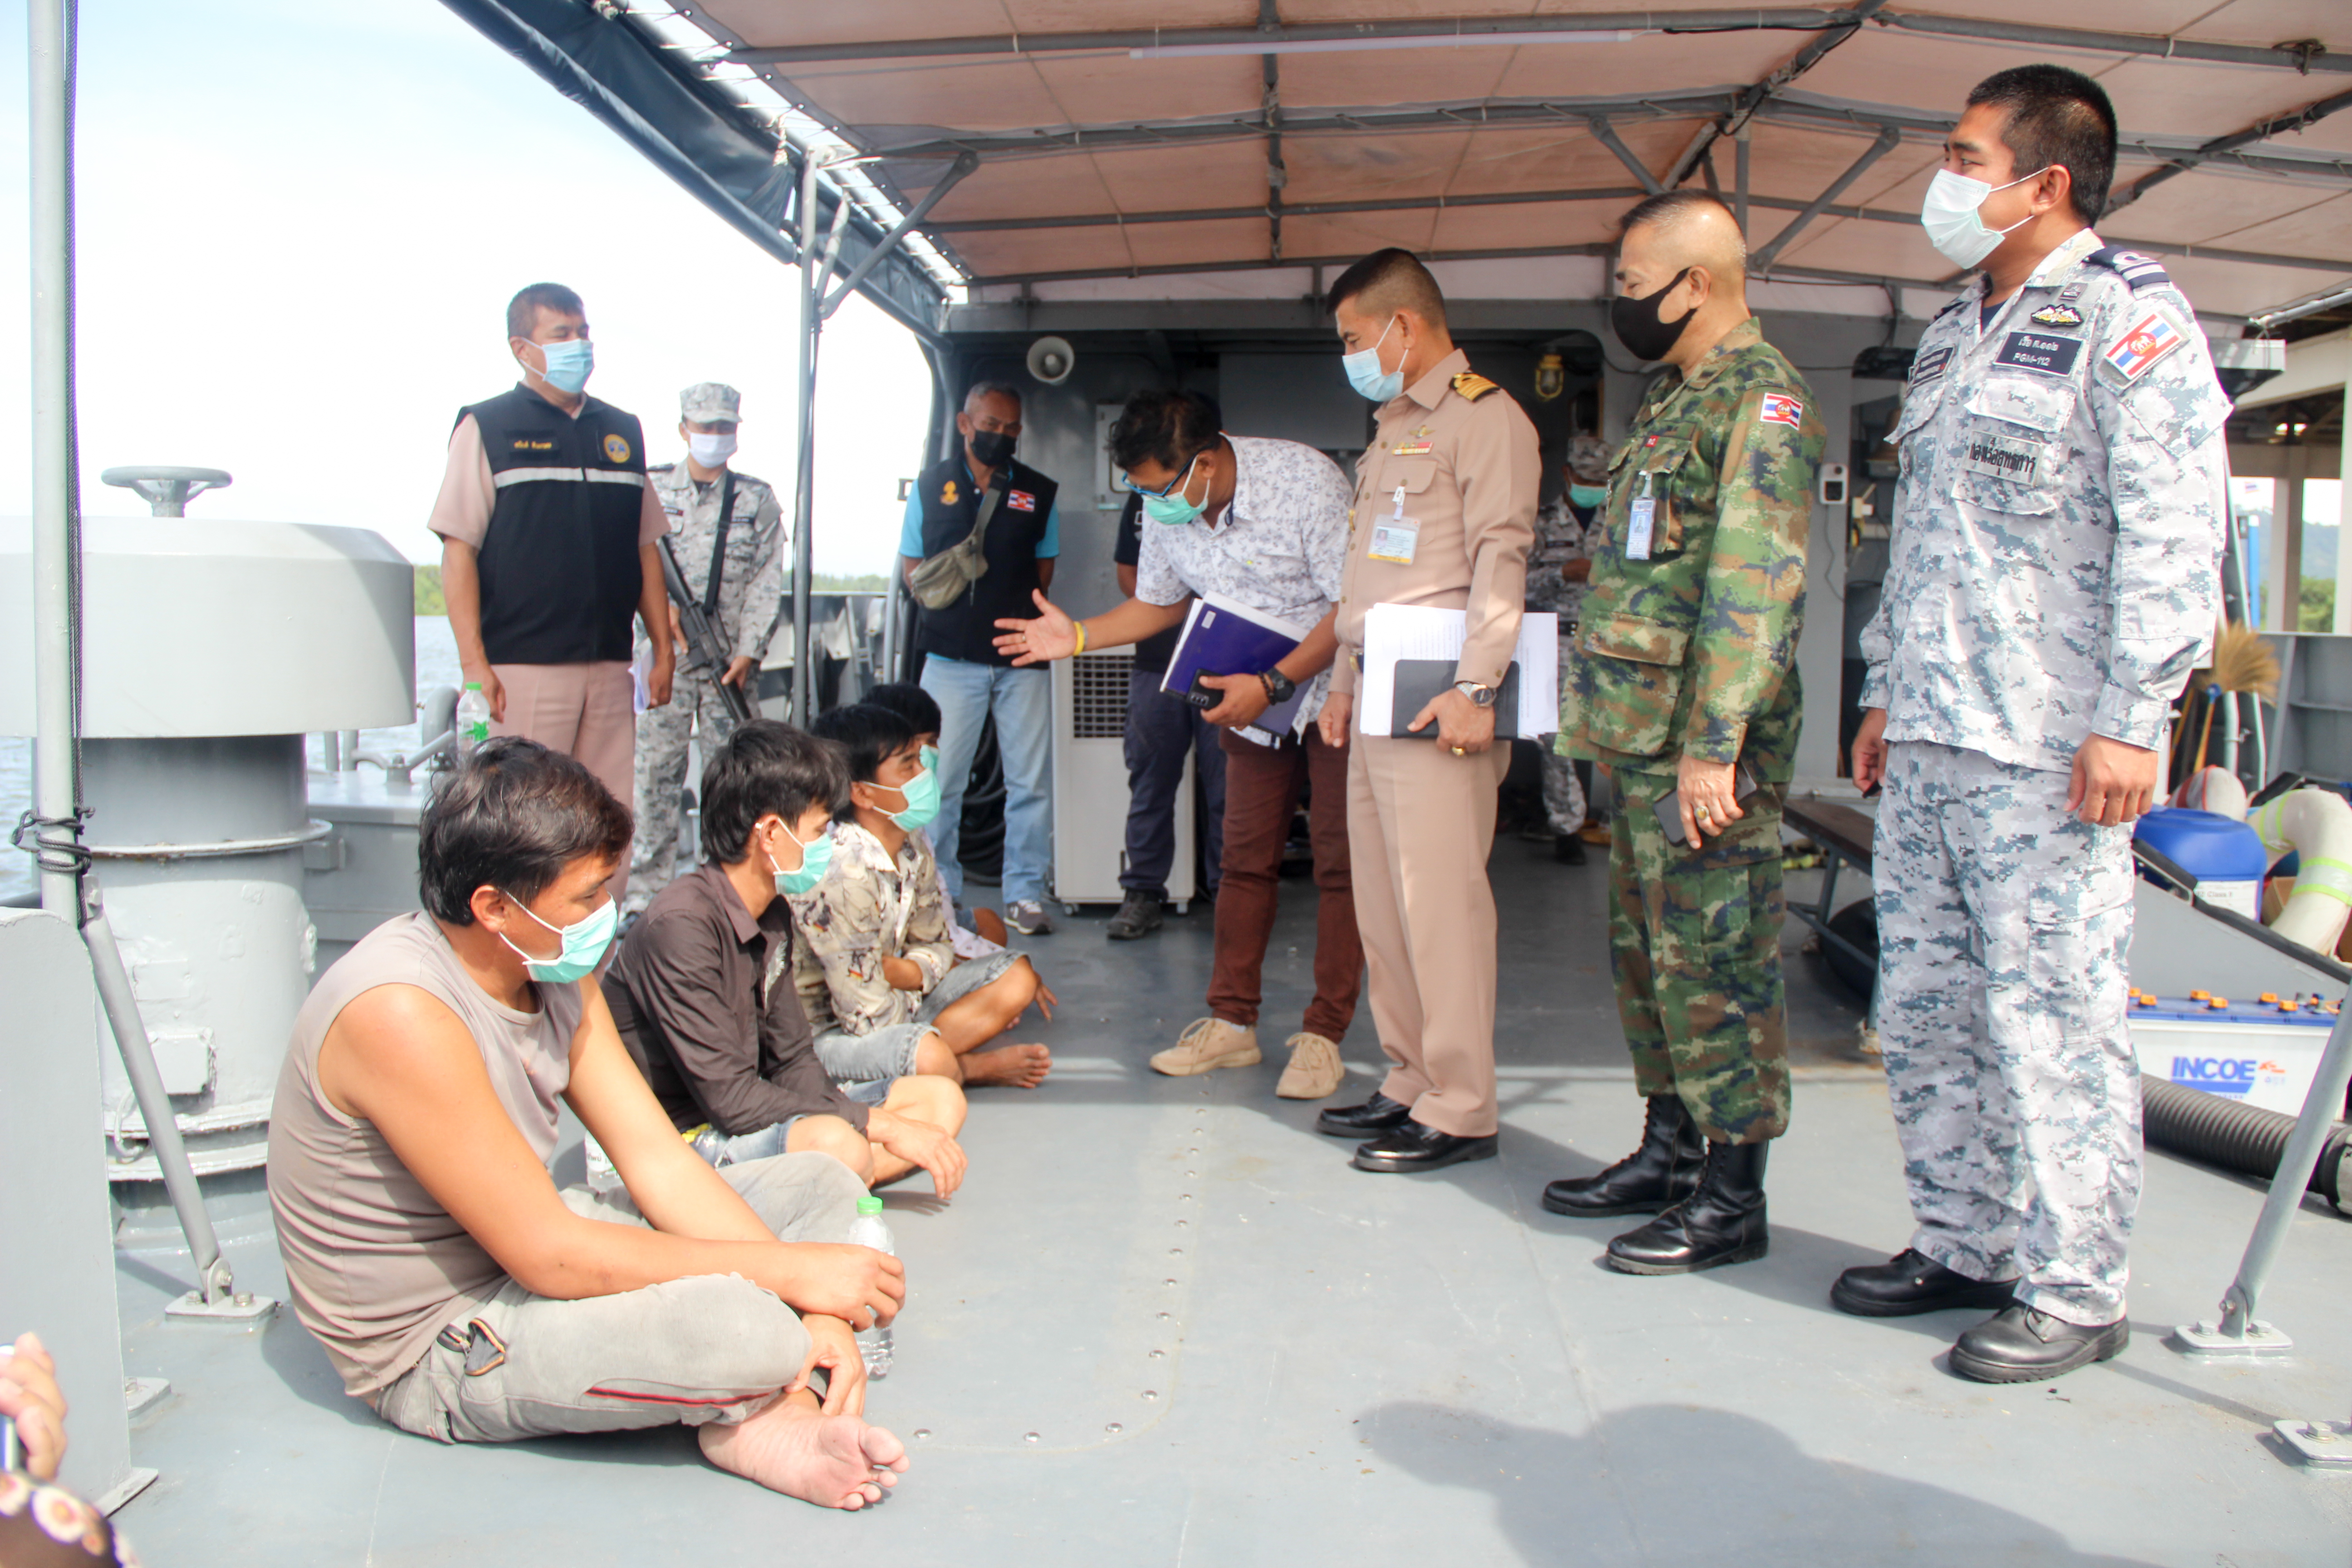 เรือ ต.112 จับกุมลูกเรือประมงเวียดนามทำการประมงผิดกฎหมายในน่านน้ำไทย 4 ราย ตรวจเข้มโควิด-19 เบื้องต้นอุณหภูมิปกติ 